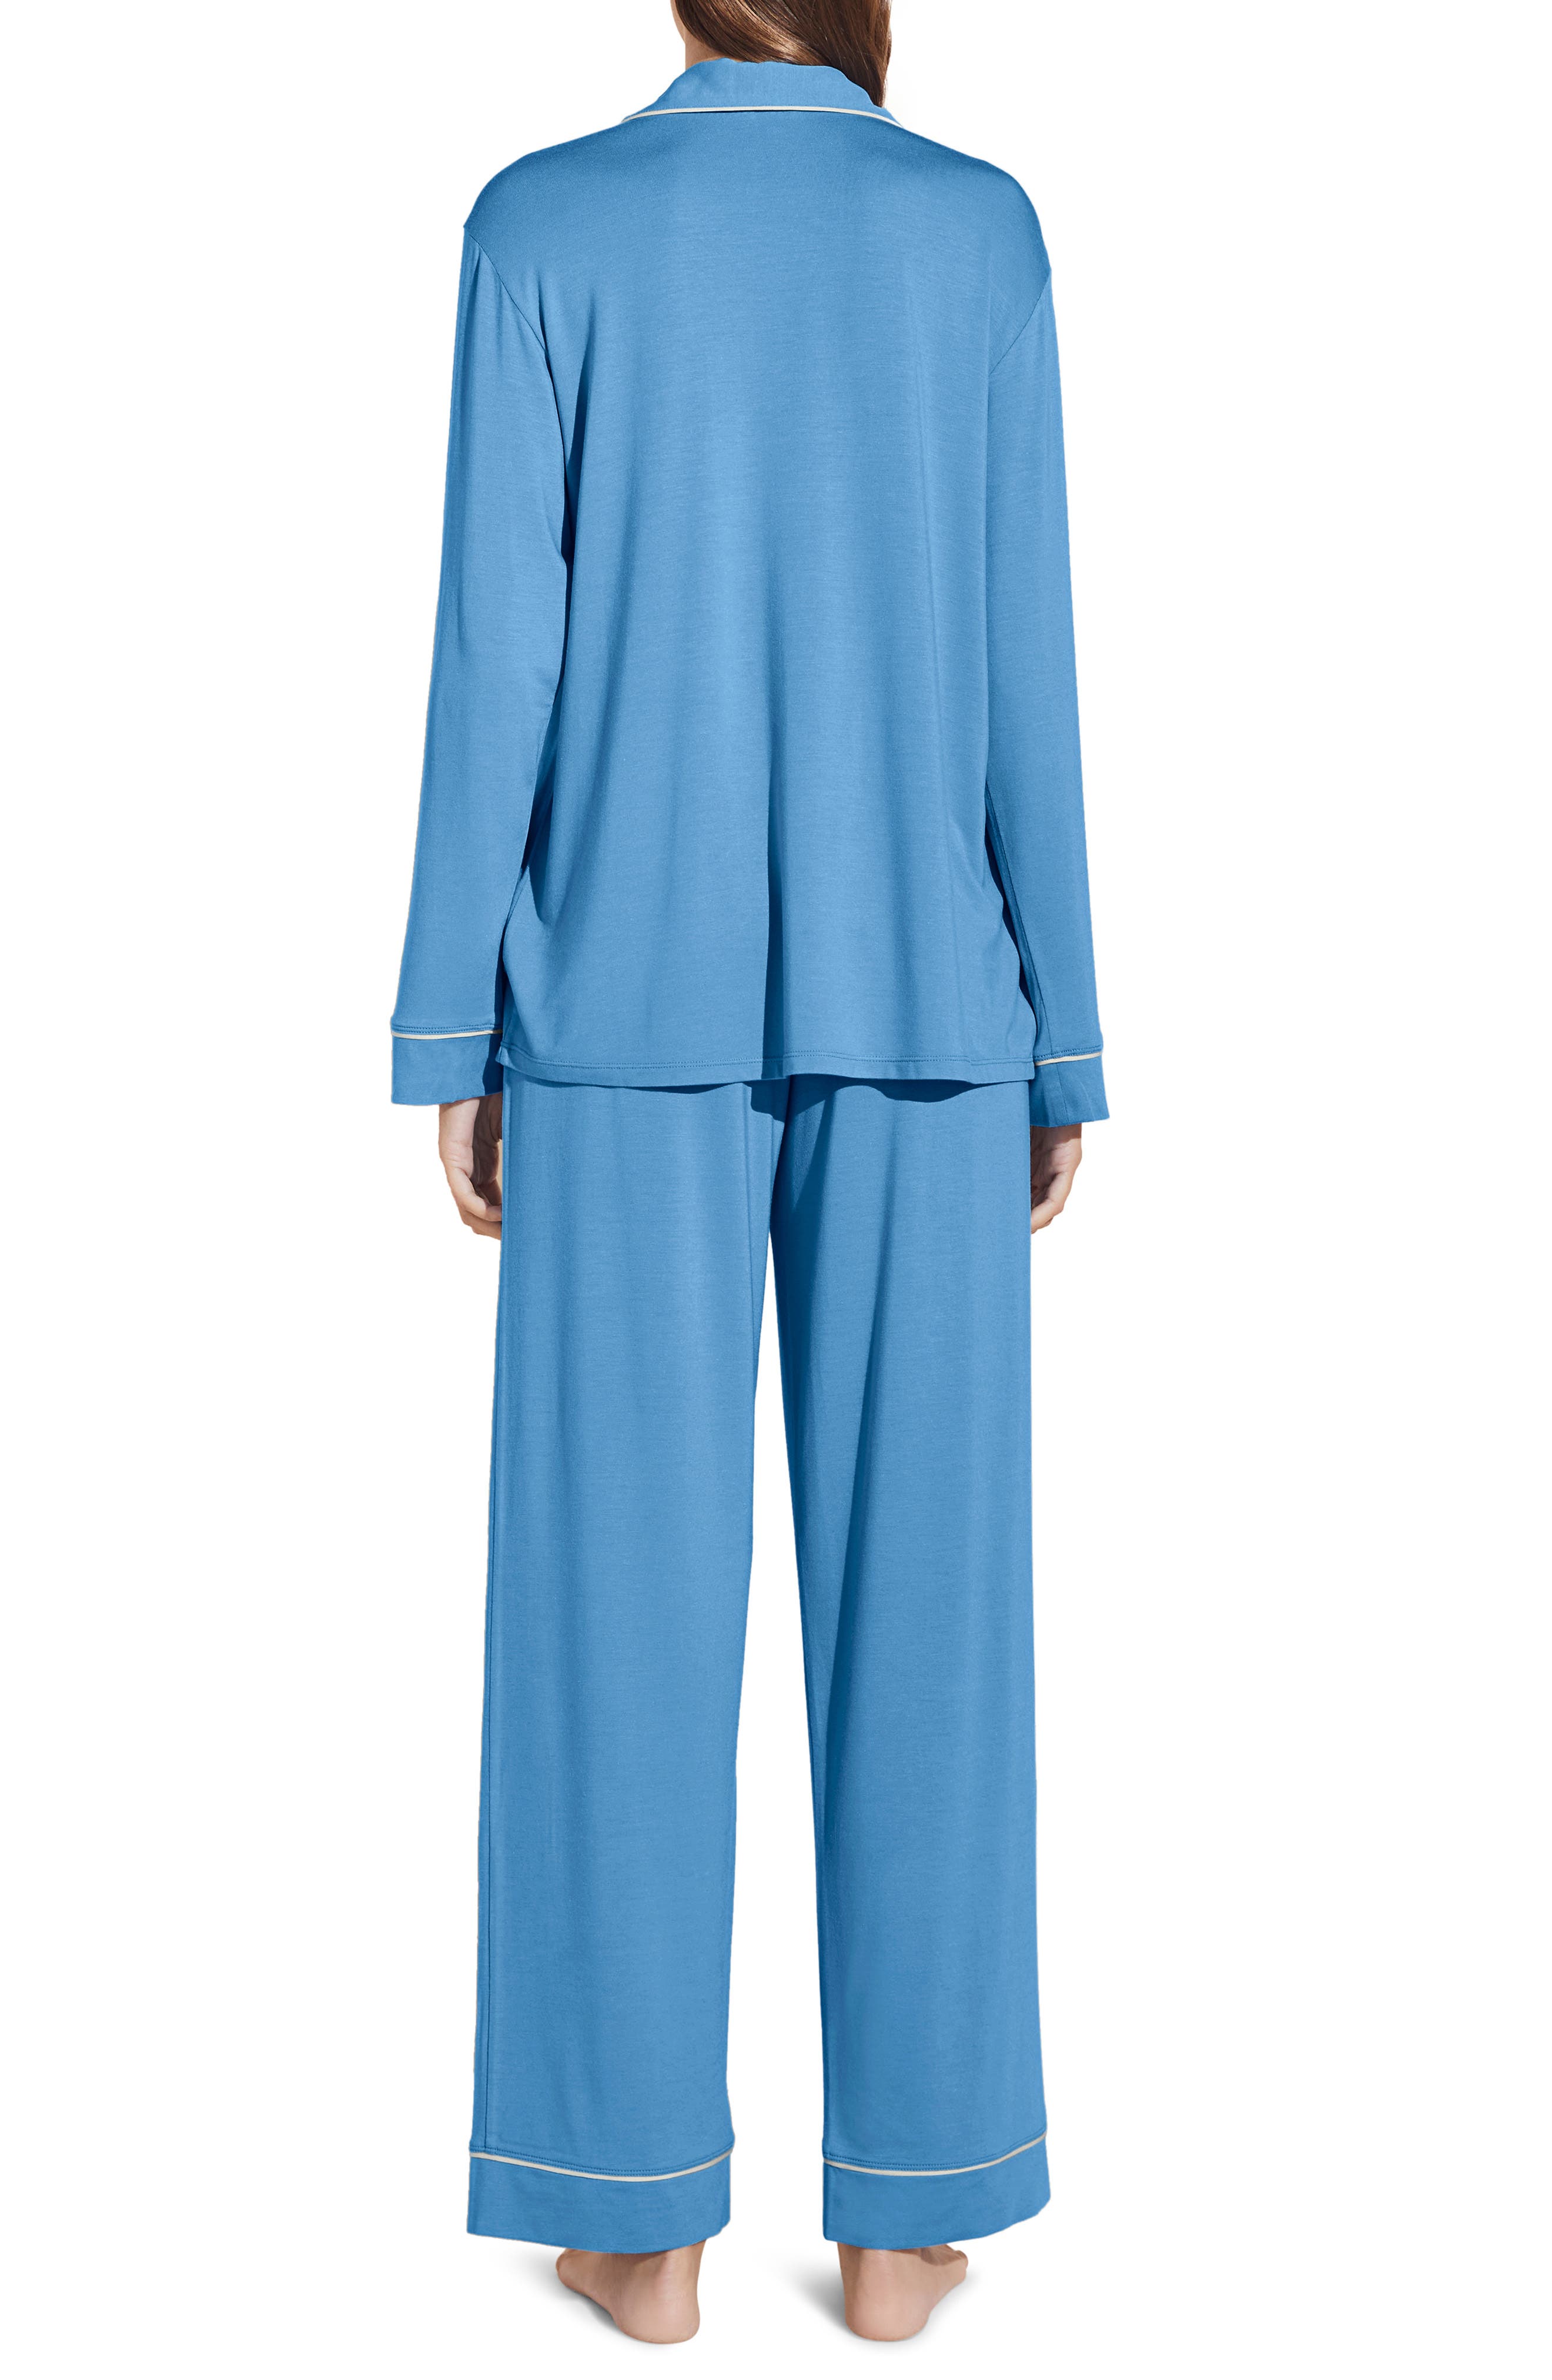 Eberjey Gisele Jersey Knit Pajamas in Azure/Ivory